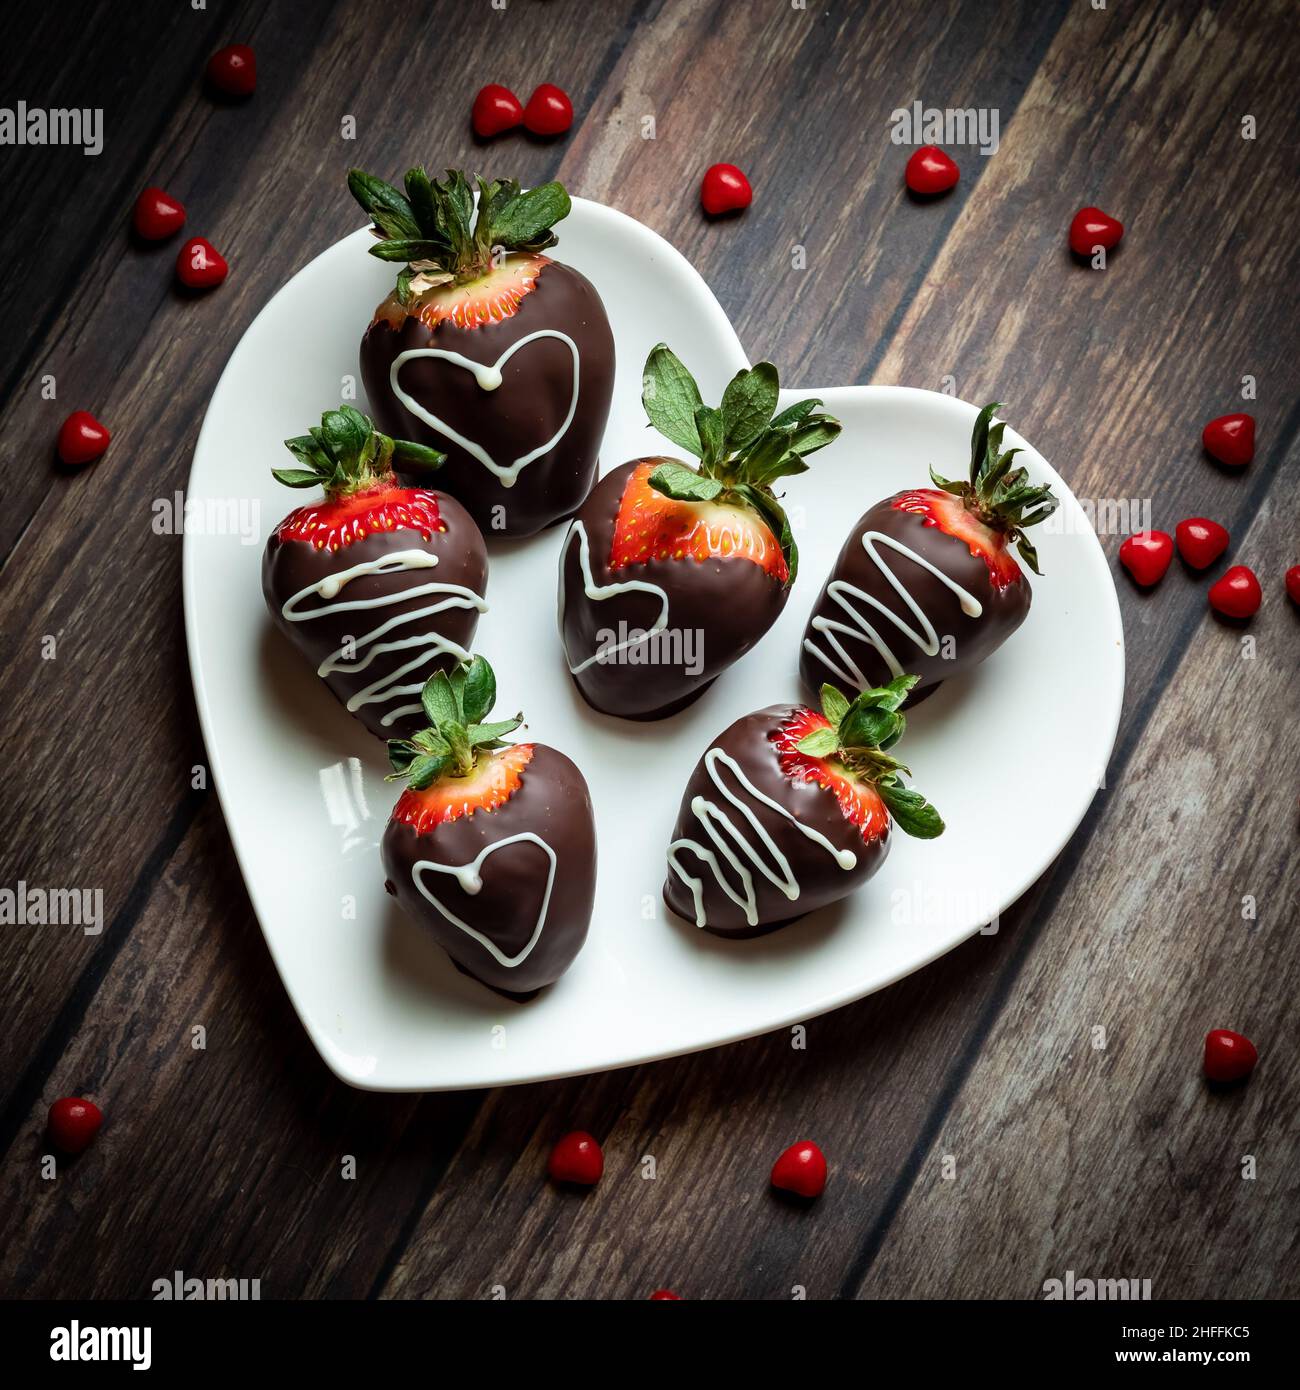 Vue de haut en bas d'une assiette en forme de coeur remplie de fraises enrobées de chocolat Banque D'Images